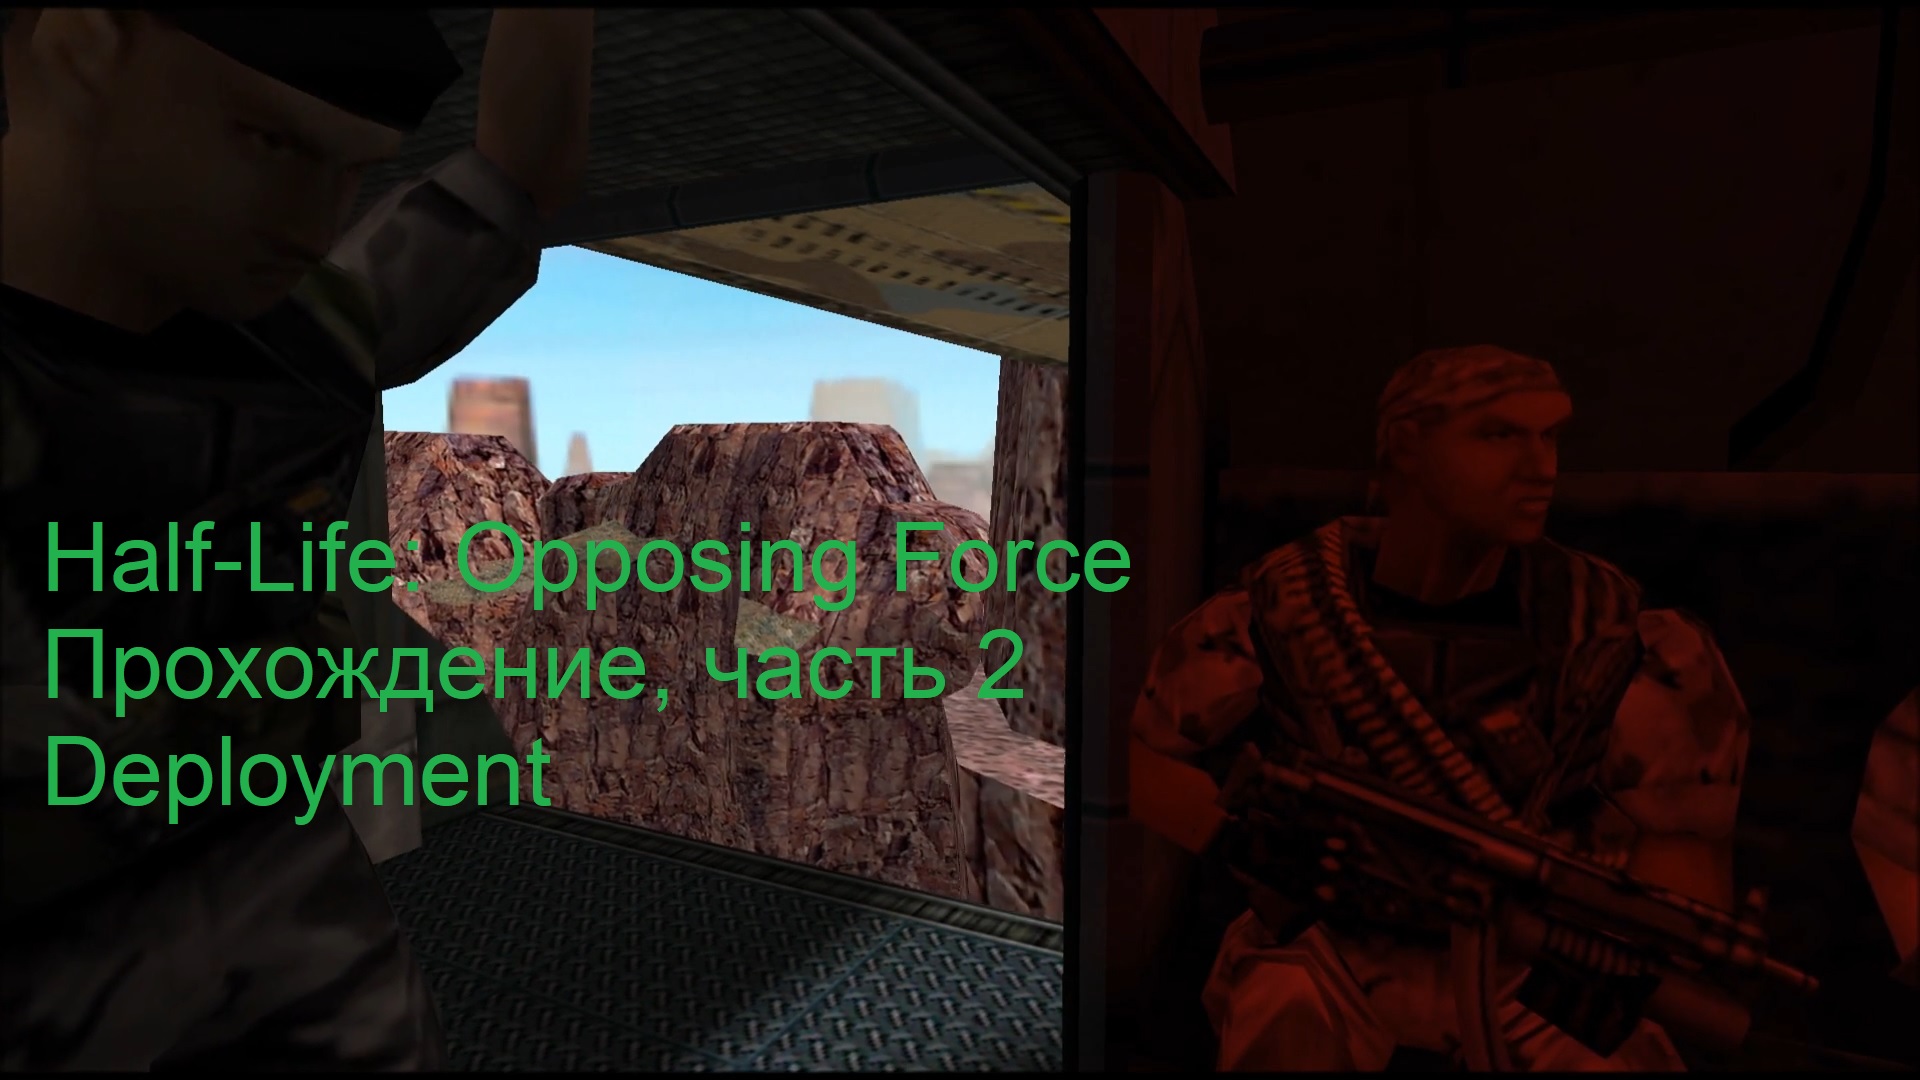 Half-Life: Opposing Force, Прохождение, часть 2 - Deployment